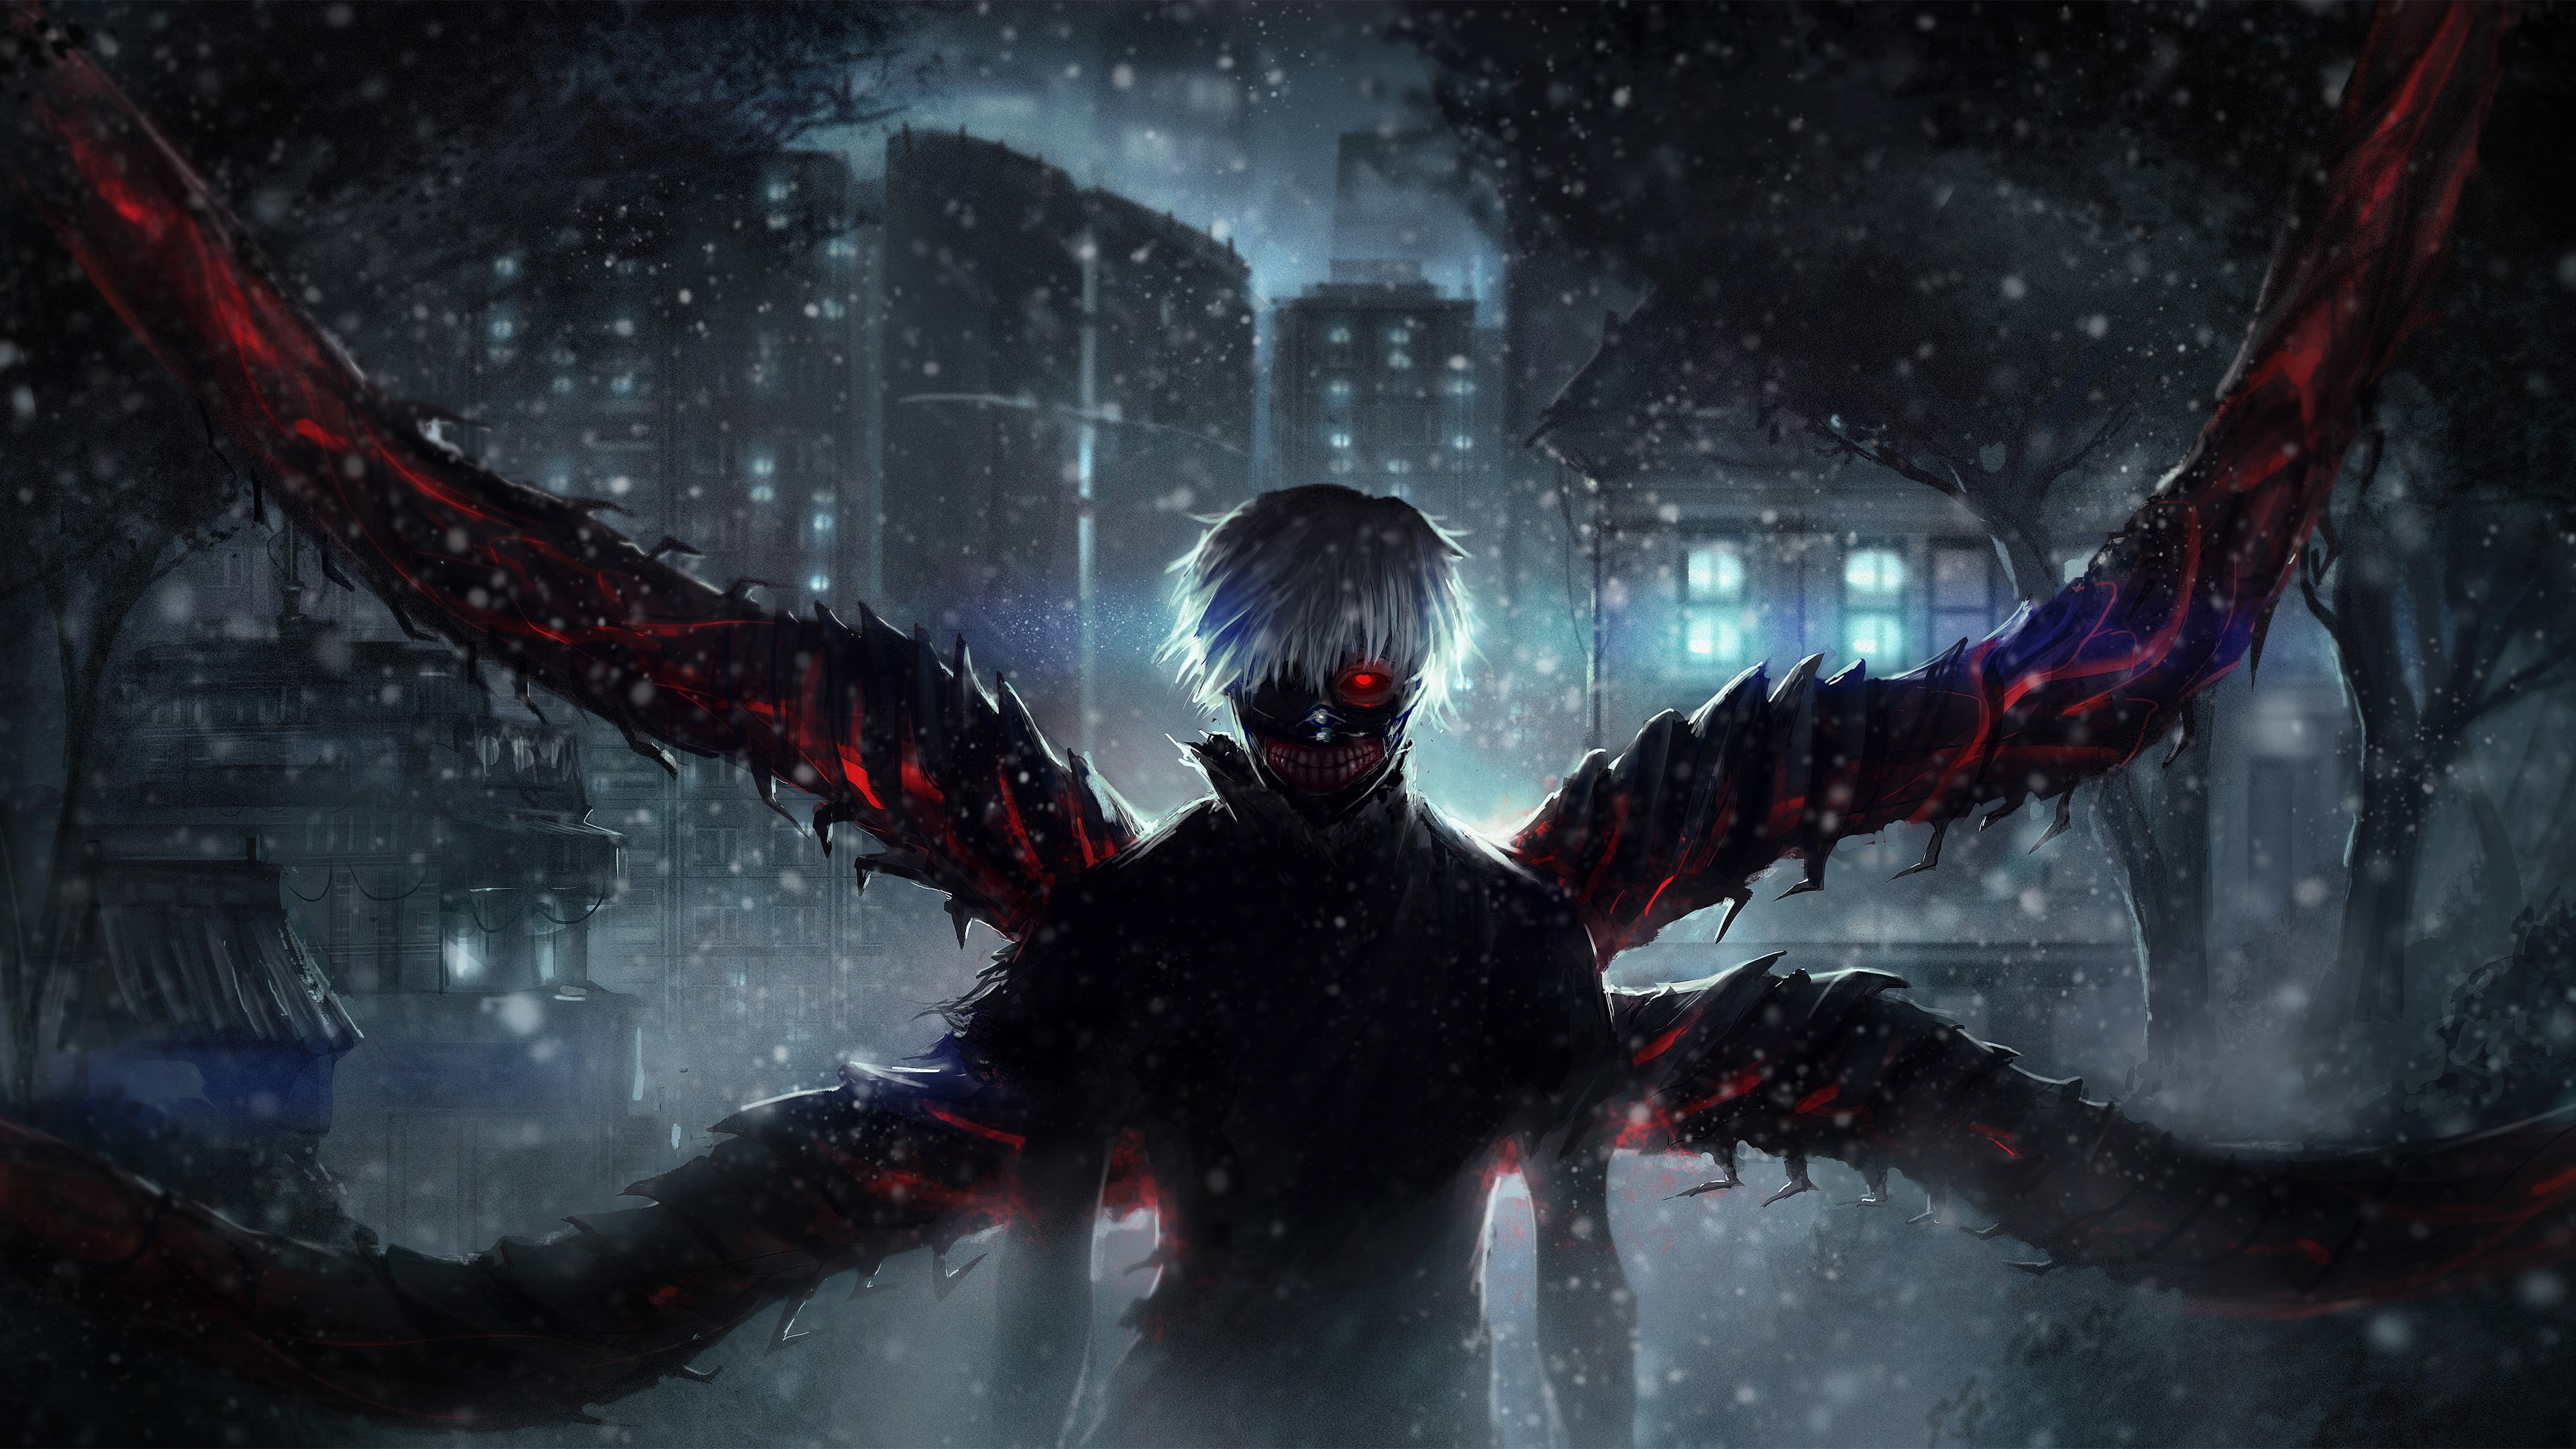 Artwork] Touka - Ngạ quỷ với đôi cánh thiên thần rực lửa | Tokyo ghoul,  Tokyo ghoul anime, Tokyo ghoul manga